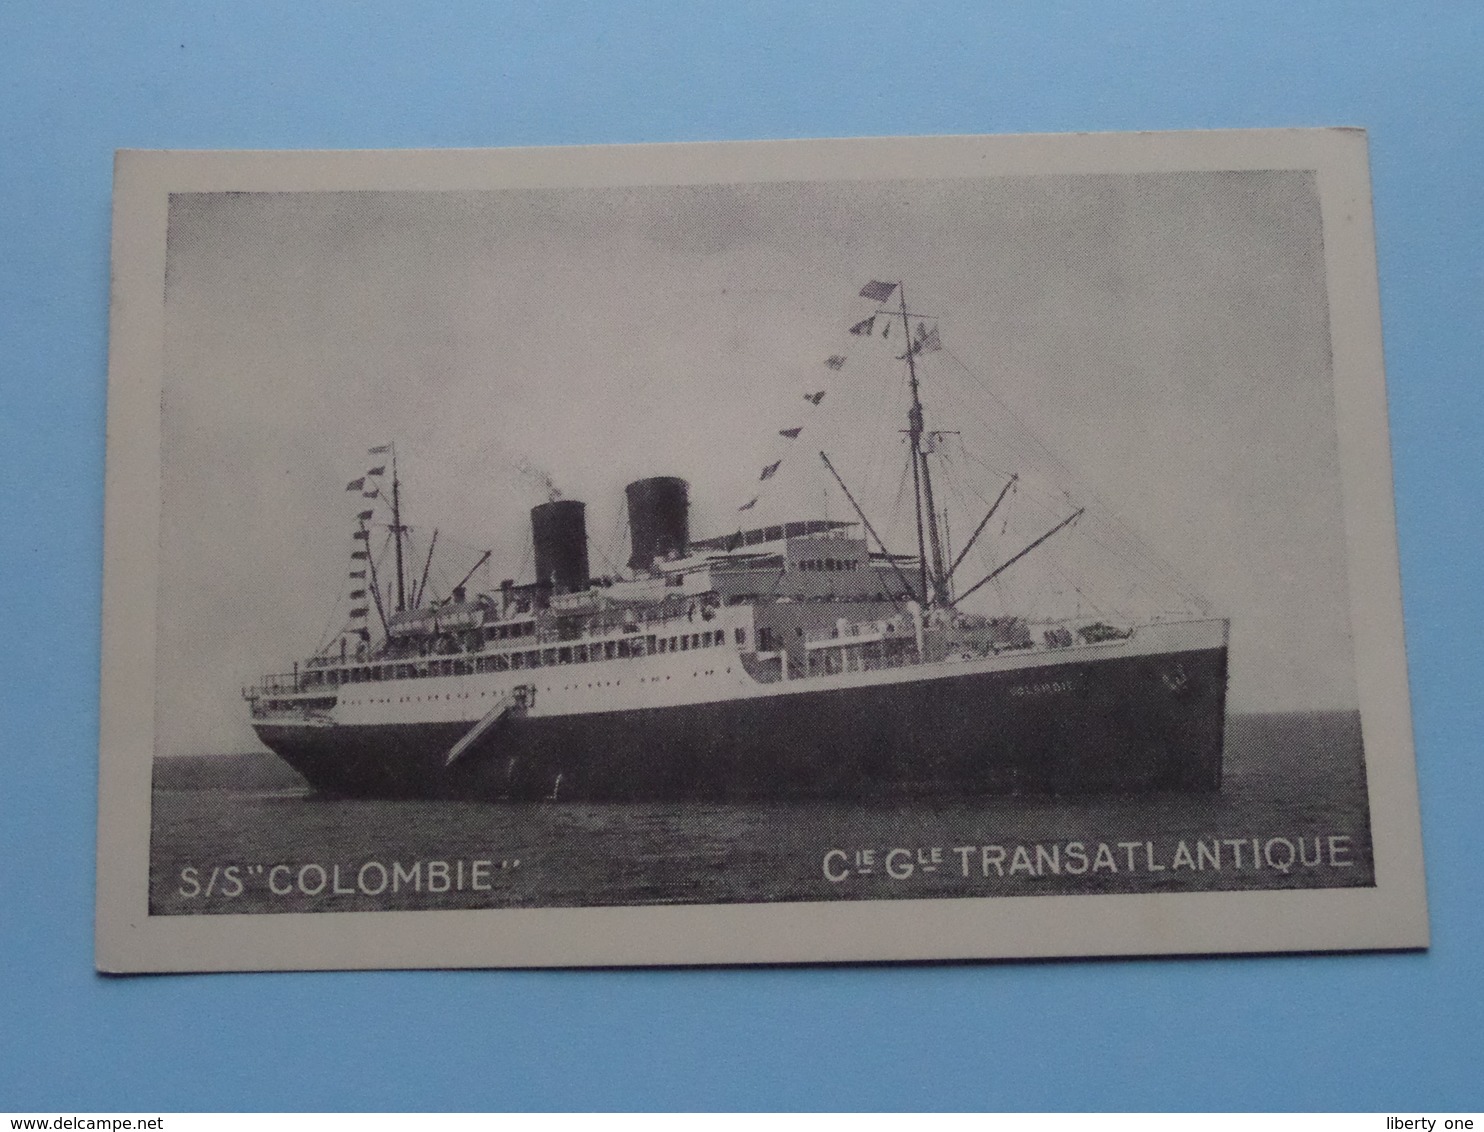 S/S " COLOMBIE " - Cie Gle TRANSATLANTIQUE French Line - Anno 19?? ( Voir Photo Details ) ! - Dampfer